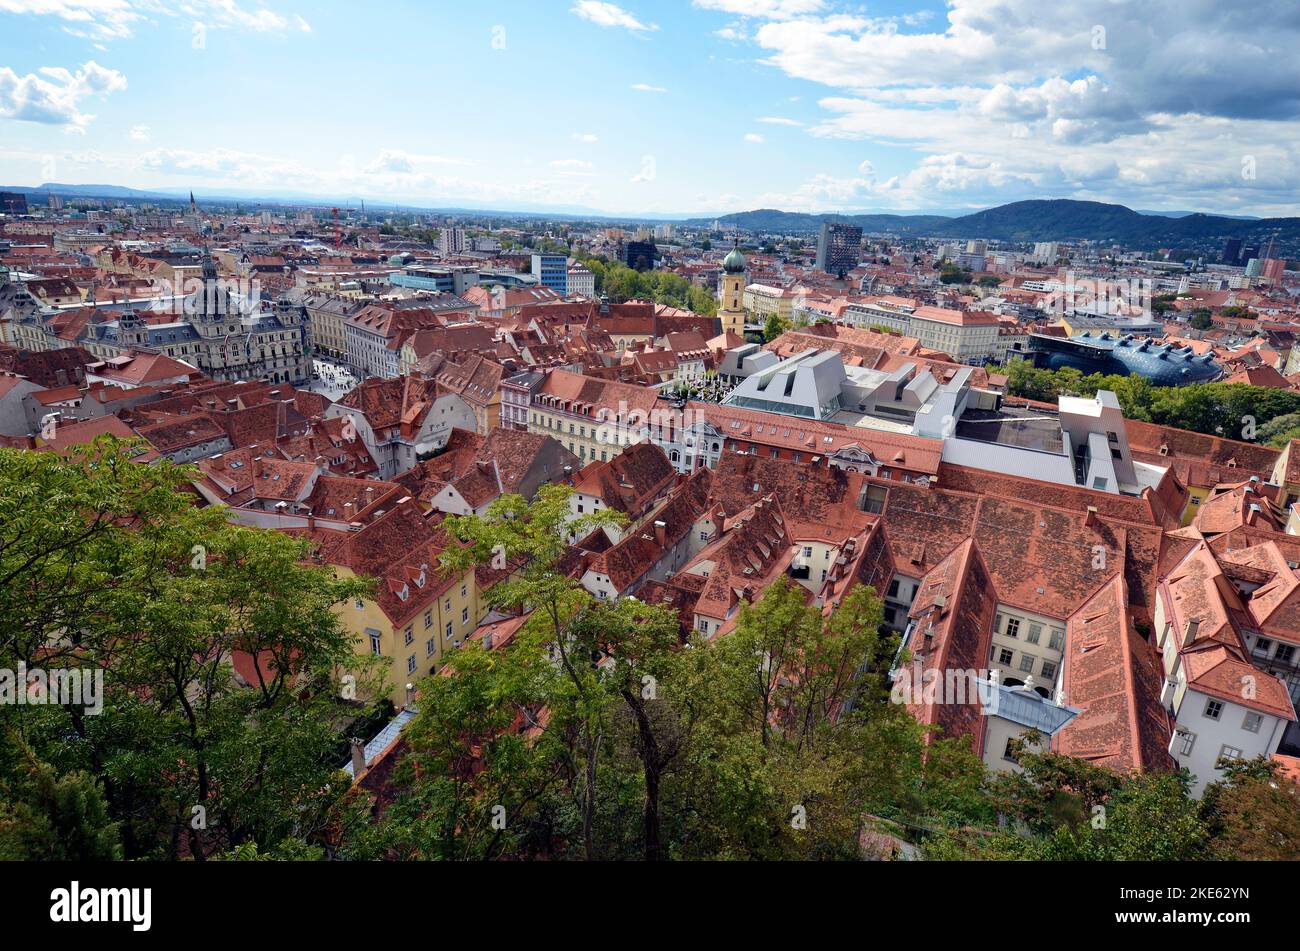 Austria, vista aérea de la ciudad de Graz, declarada Patrimonio de la Humanidad por la UNESCO, capital de Estiria con Kunsthaus, un edificio de exposiciones y nueva arquitectura Foto de stock